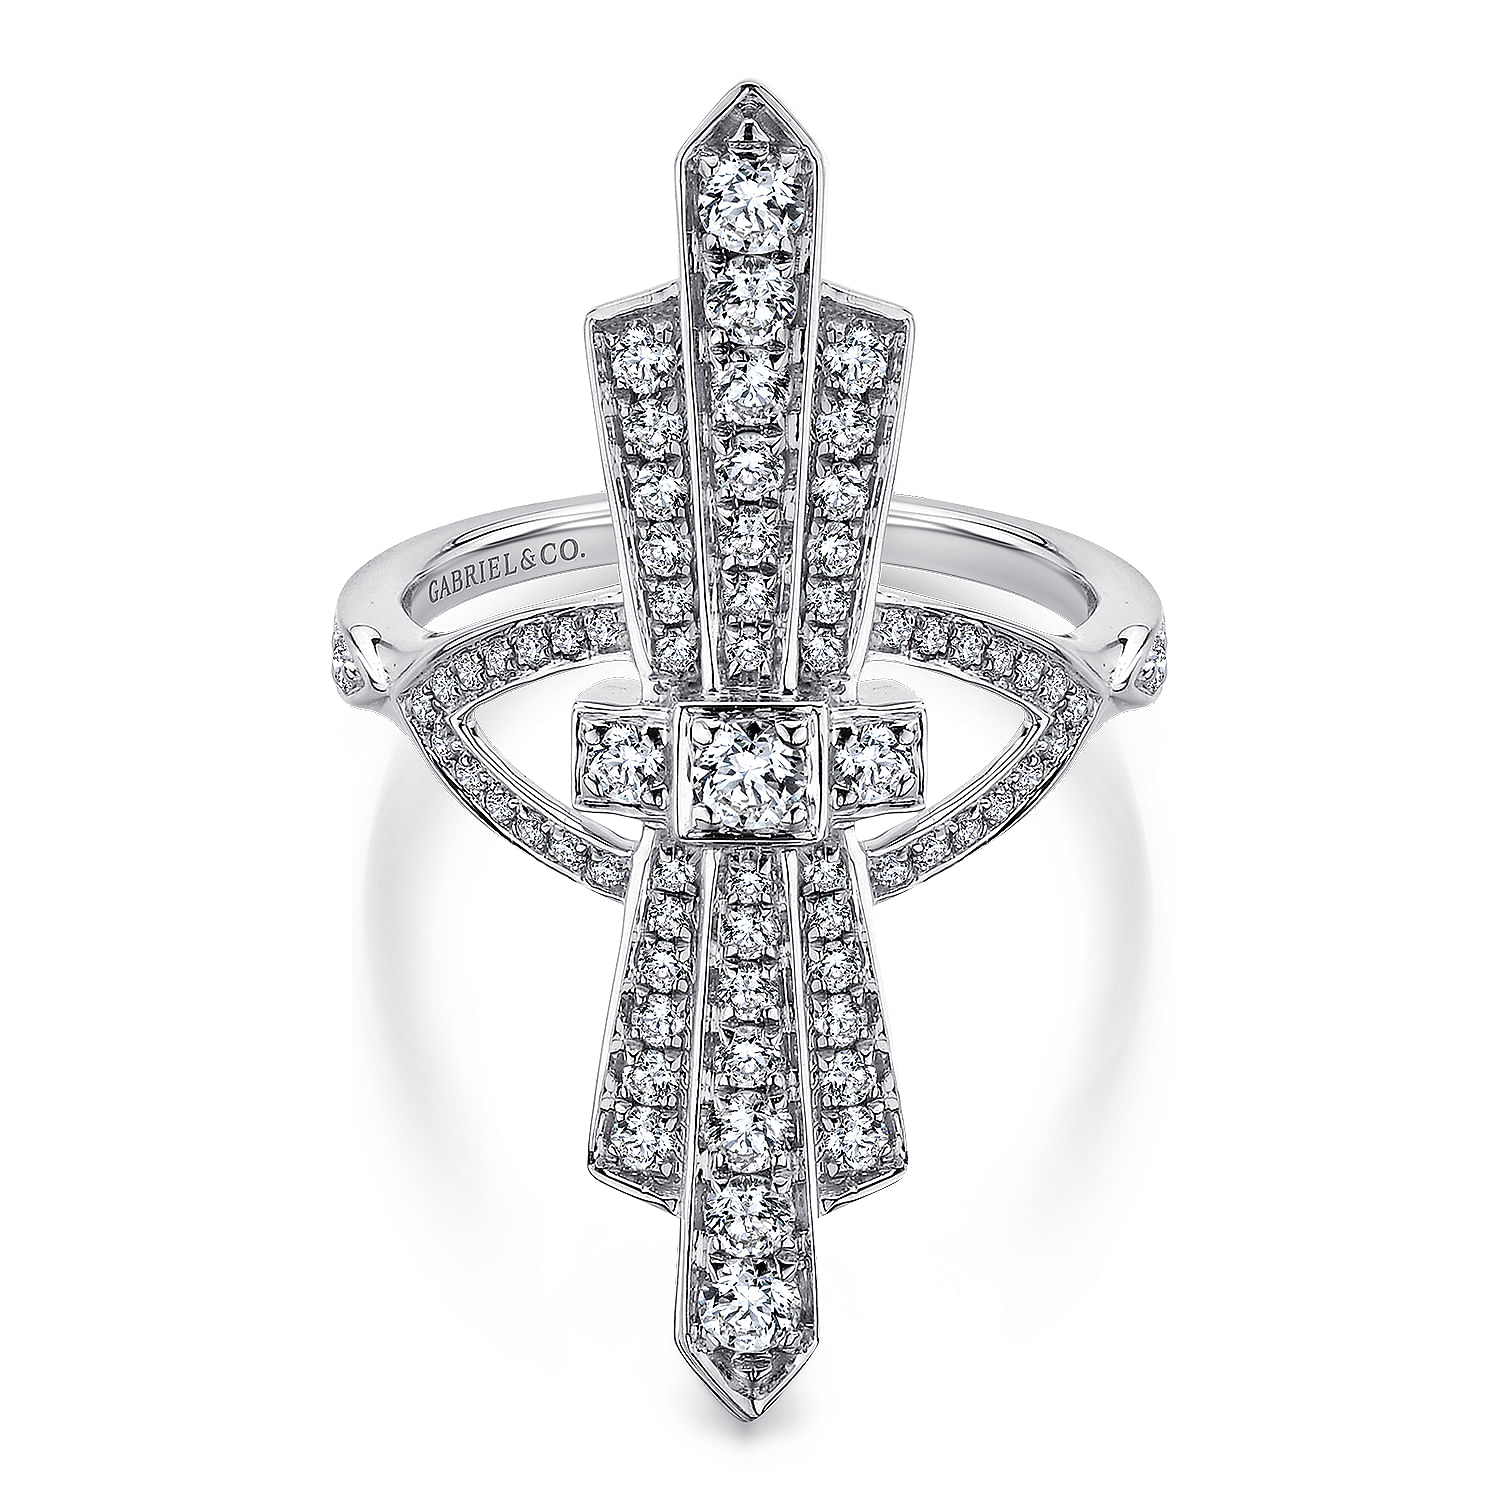 14K White Gold Art Deco Inspired Diamond Ring